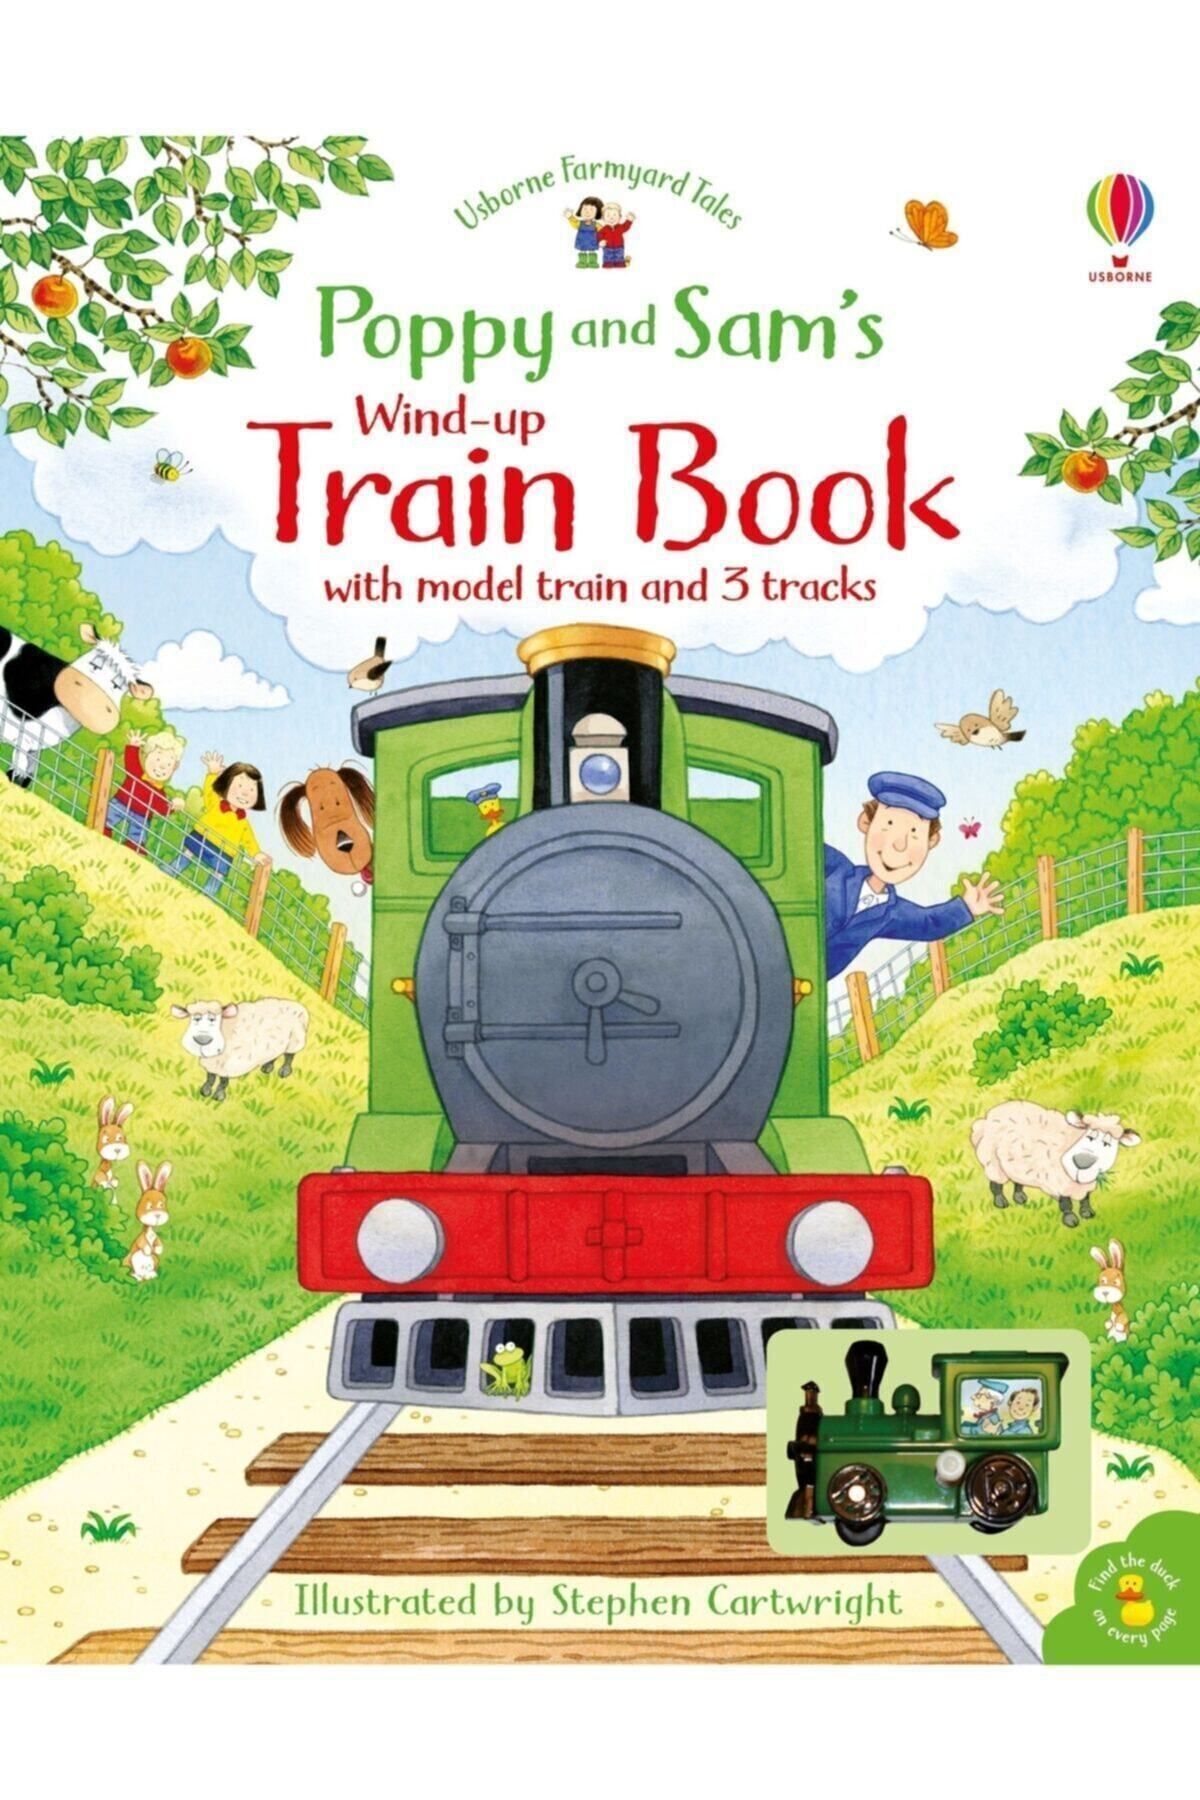 Usborne Poppy And Sam's Wind-up Traın Bookasya Kid Books- Oyuncak Trenli Kalın Kitap